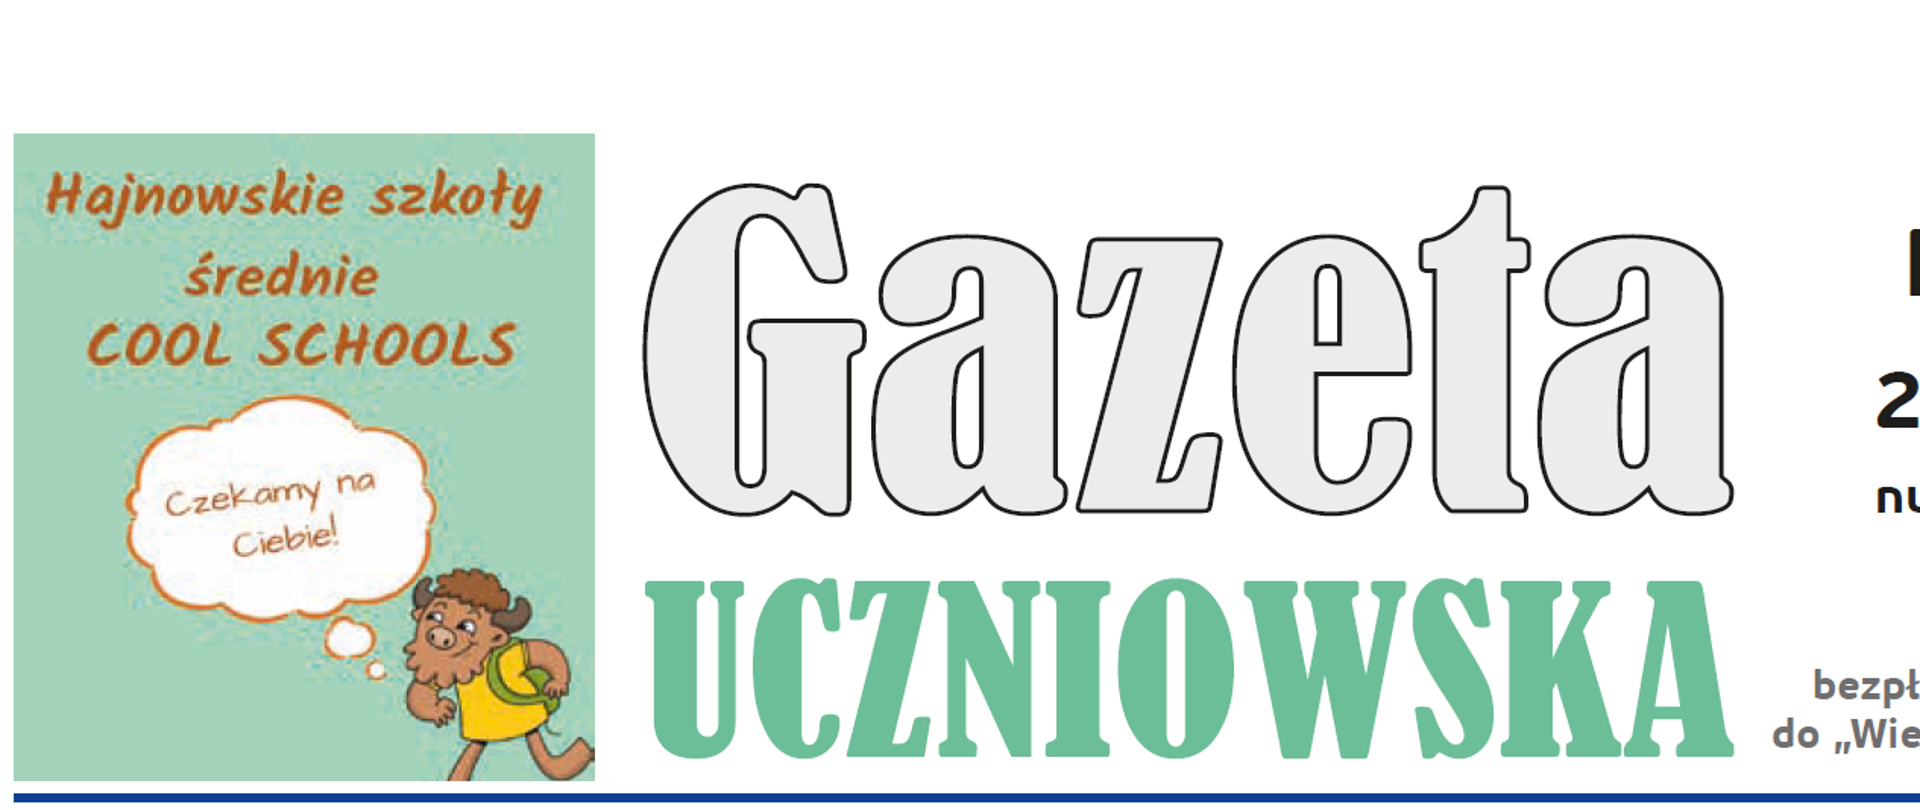 Gazeta Uczniowska, maj 2022, numer 1- nagłówek gazety